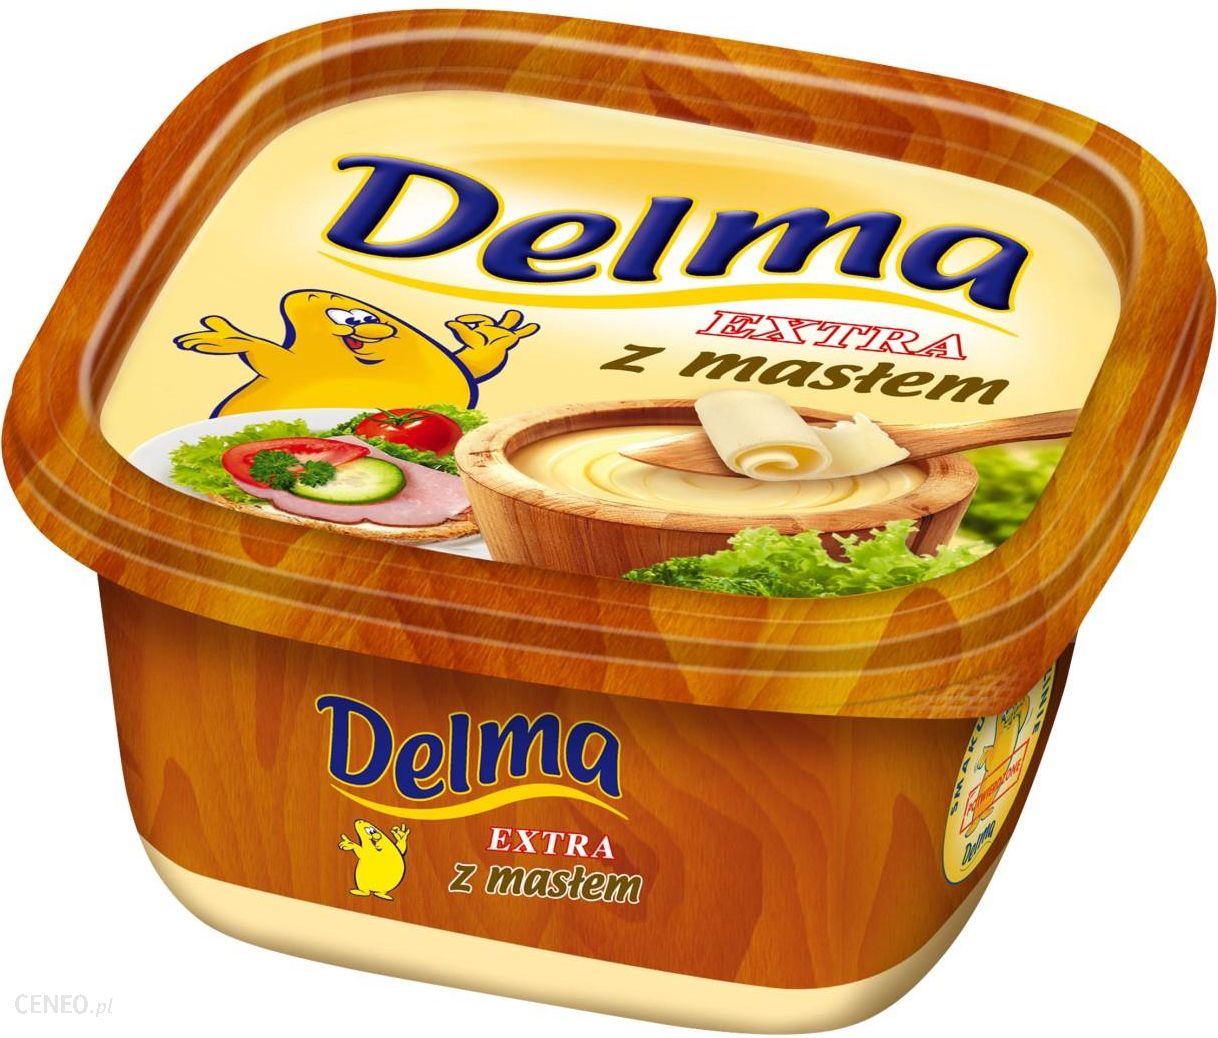 Delma Extra z masłem Margaryna 450 g - Ceny i opinie - Ceneo.pl